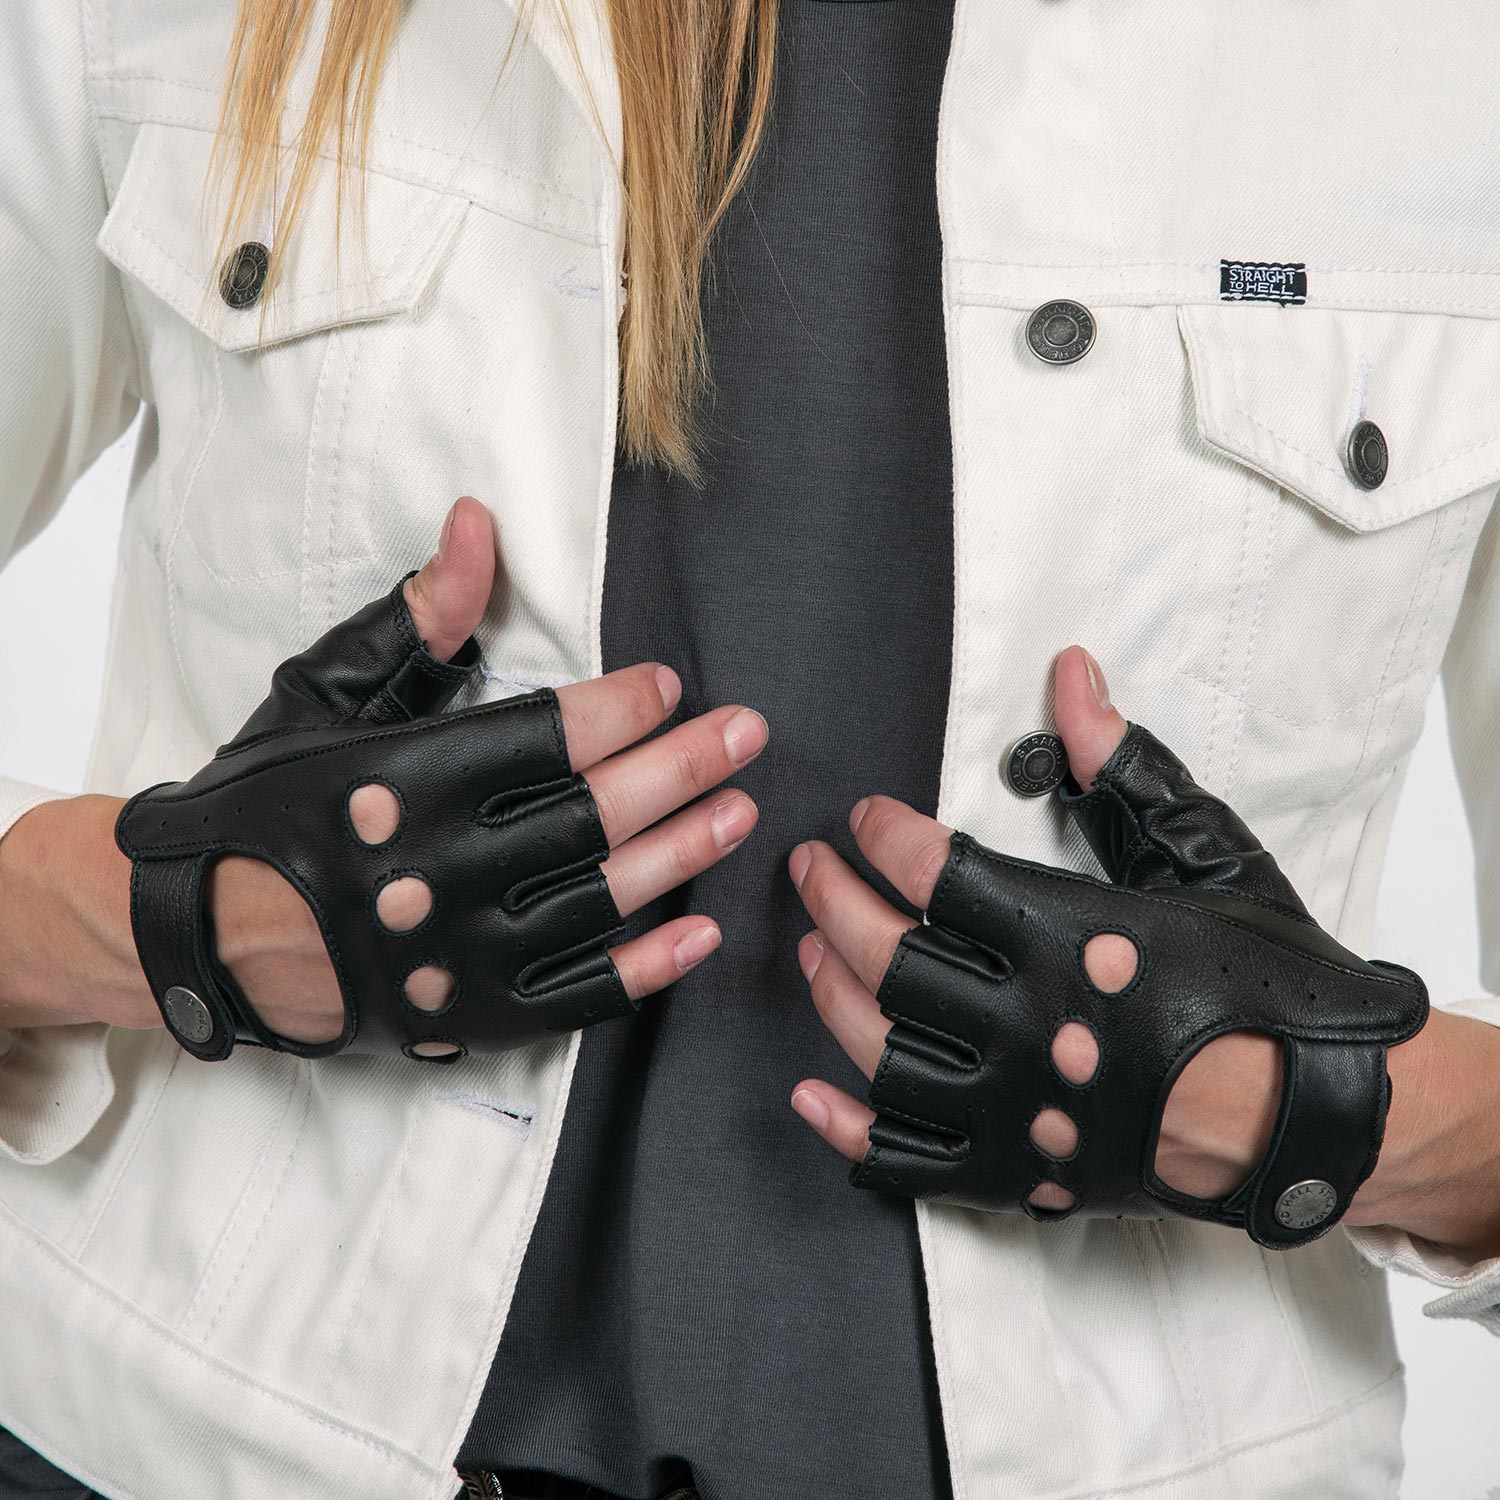 fingerless gloves leather